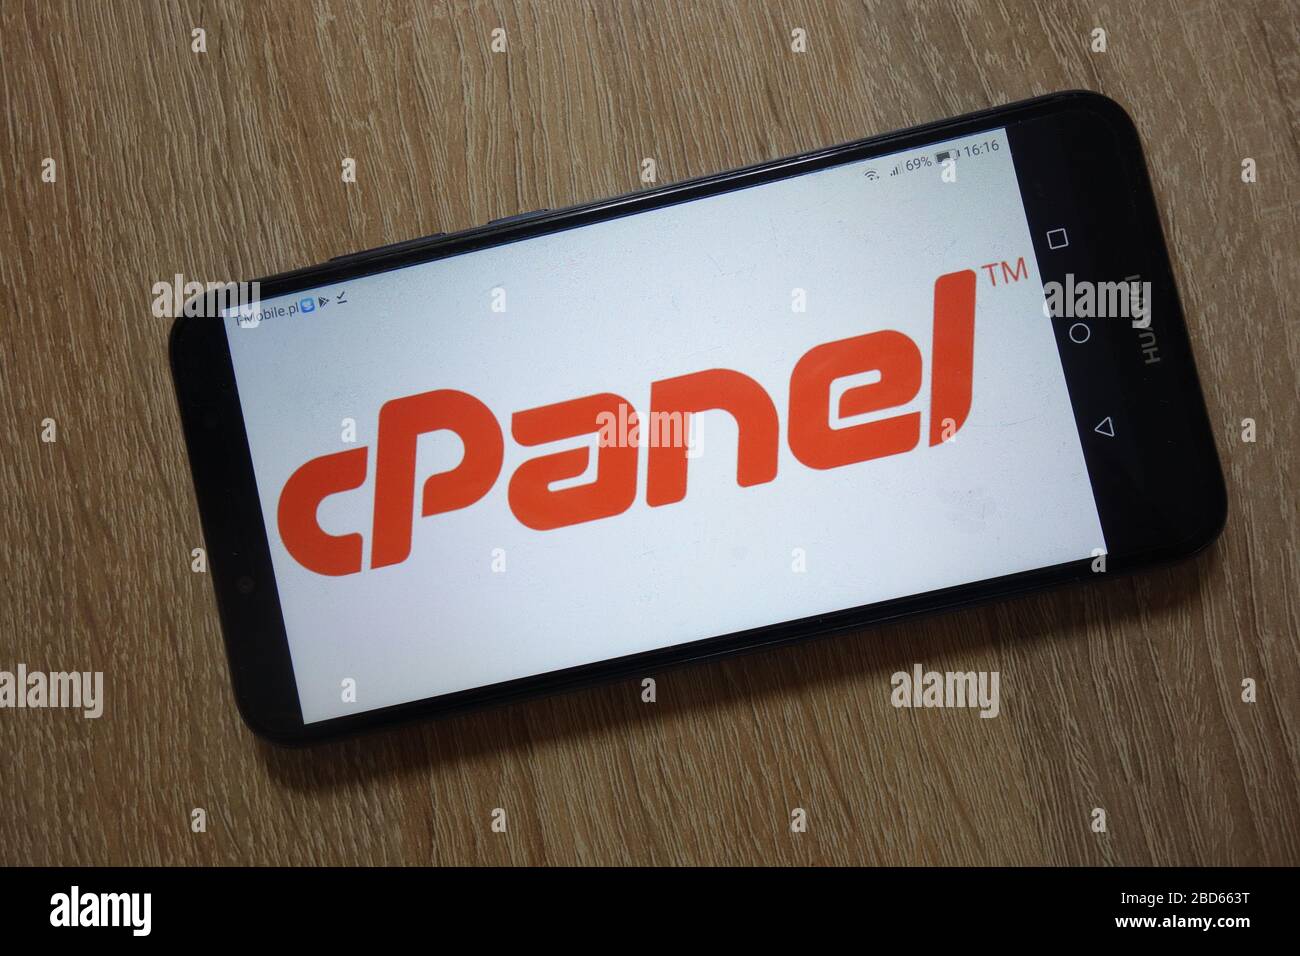 Il logo cPanel viene visualizzato sullo smartphone. CPanel è un pannello di controllo online basato su Web hosting Foto Stock